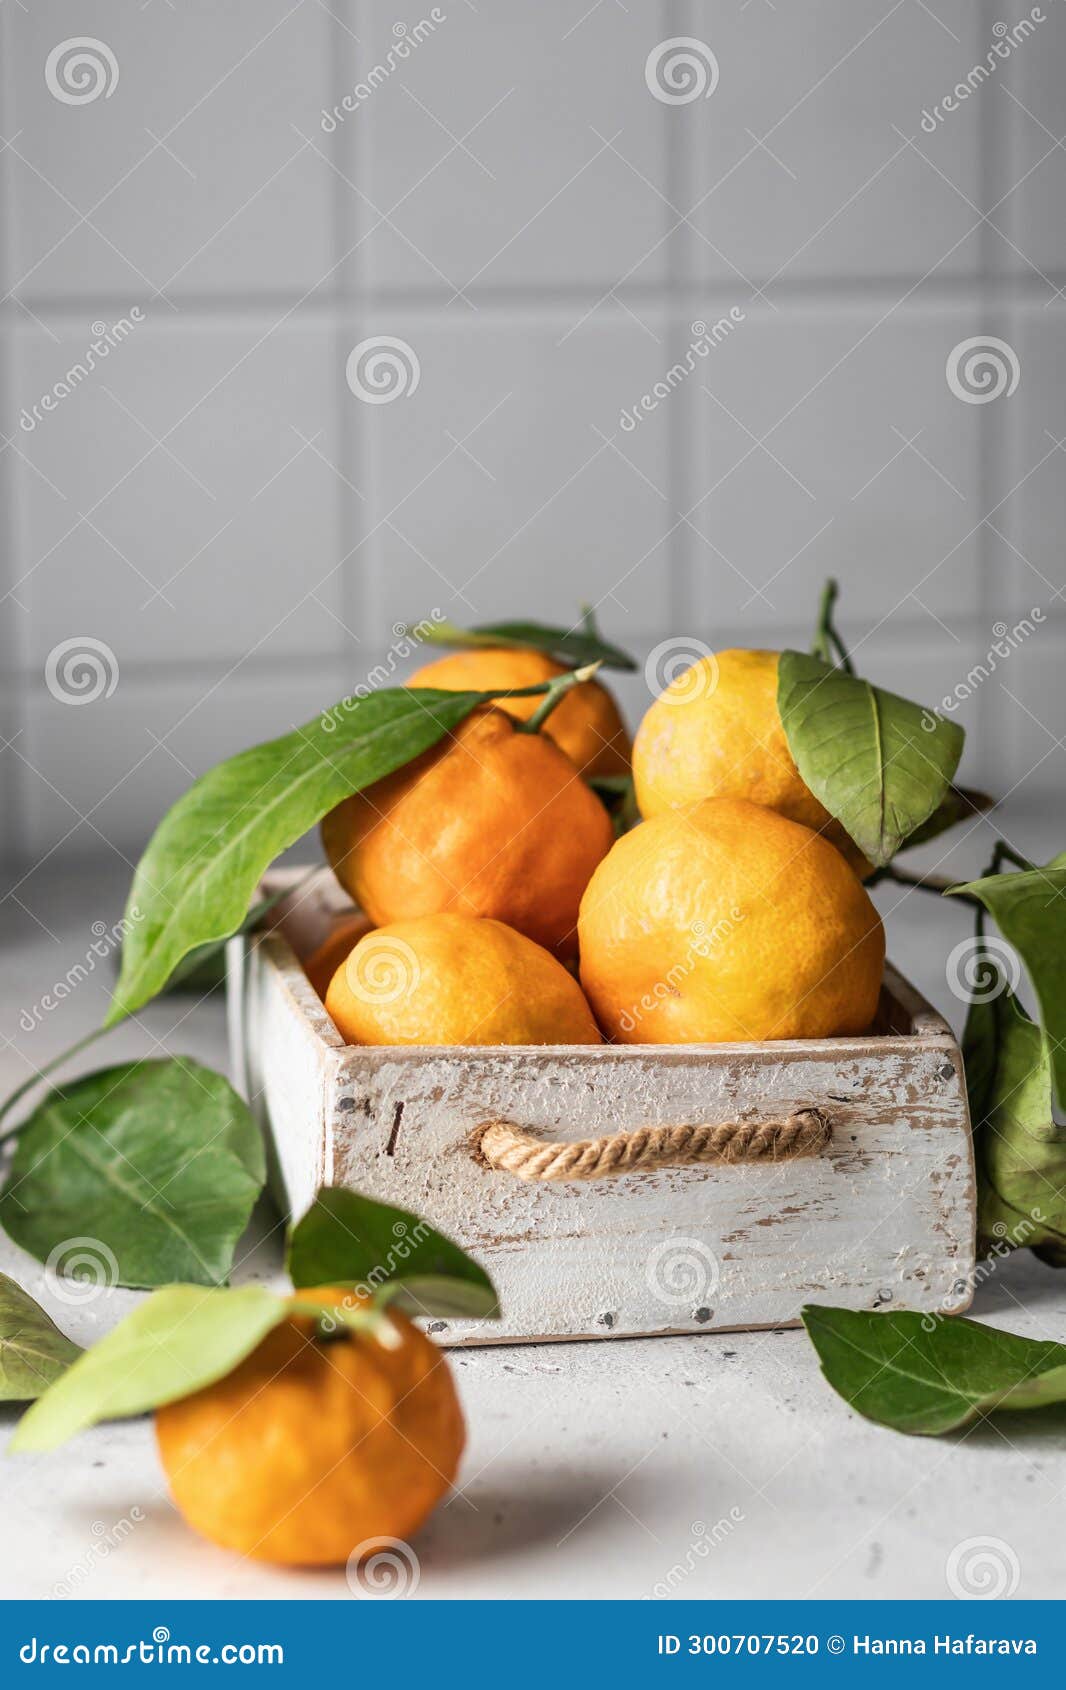 橘子在白色厨房瓷砖的木盒中清洁柑橘. 橘子在白色厨房瓷砖背景上，在木箱里用复制空间把柑橘树的绿叶切成. 垂直